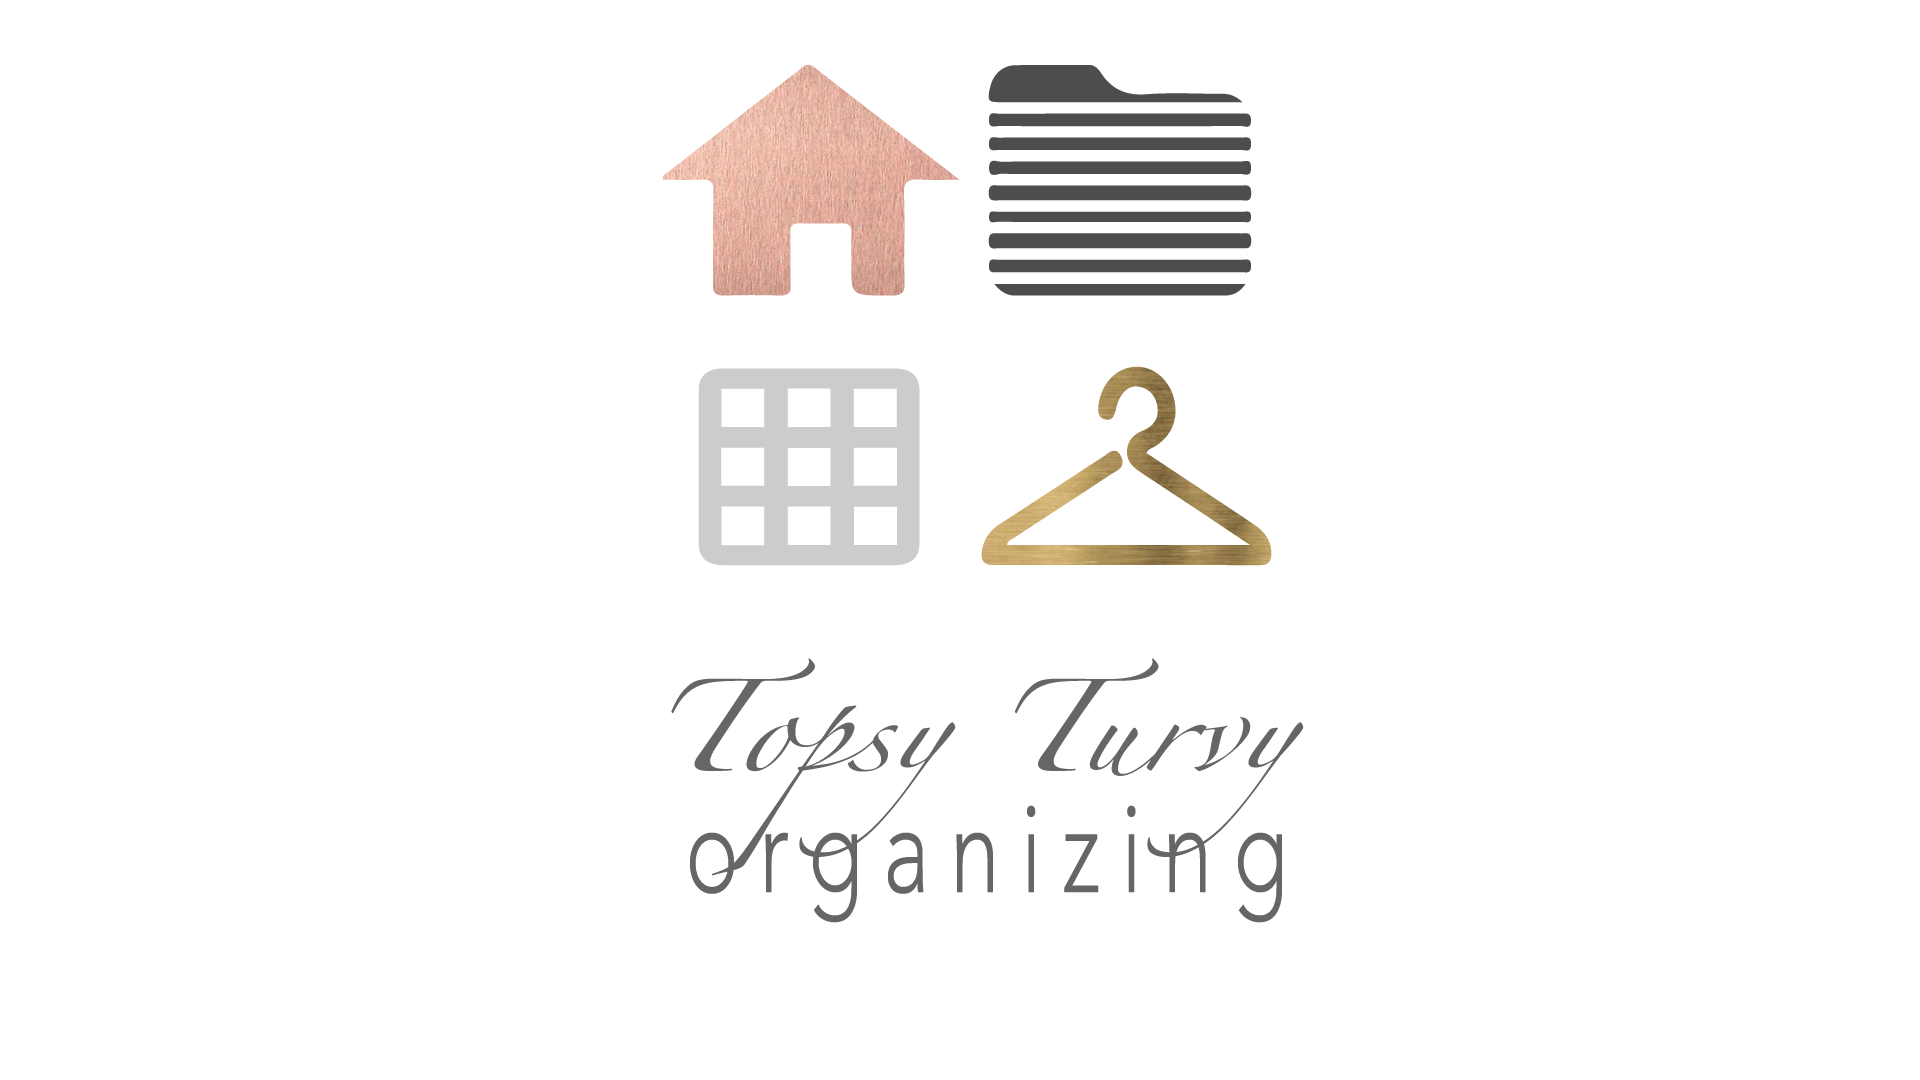 Topsy Turvy Organizing